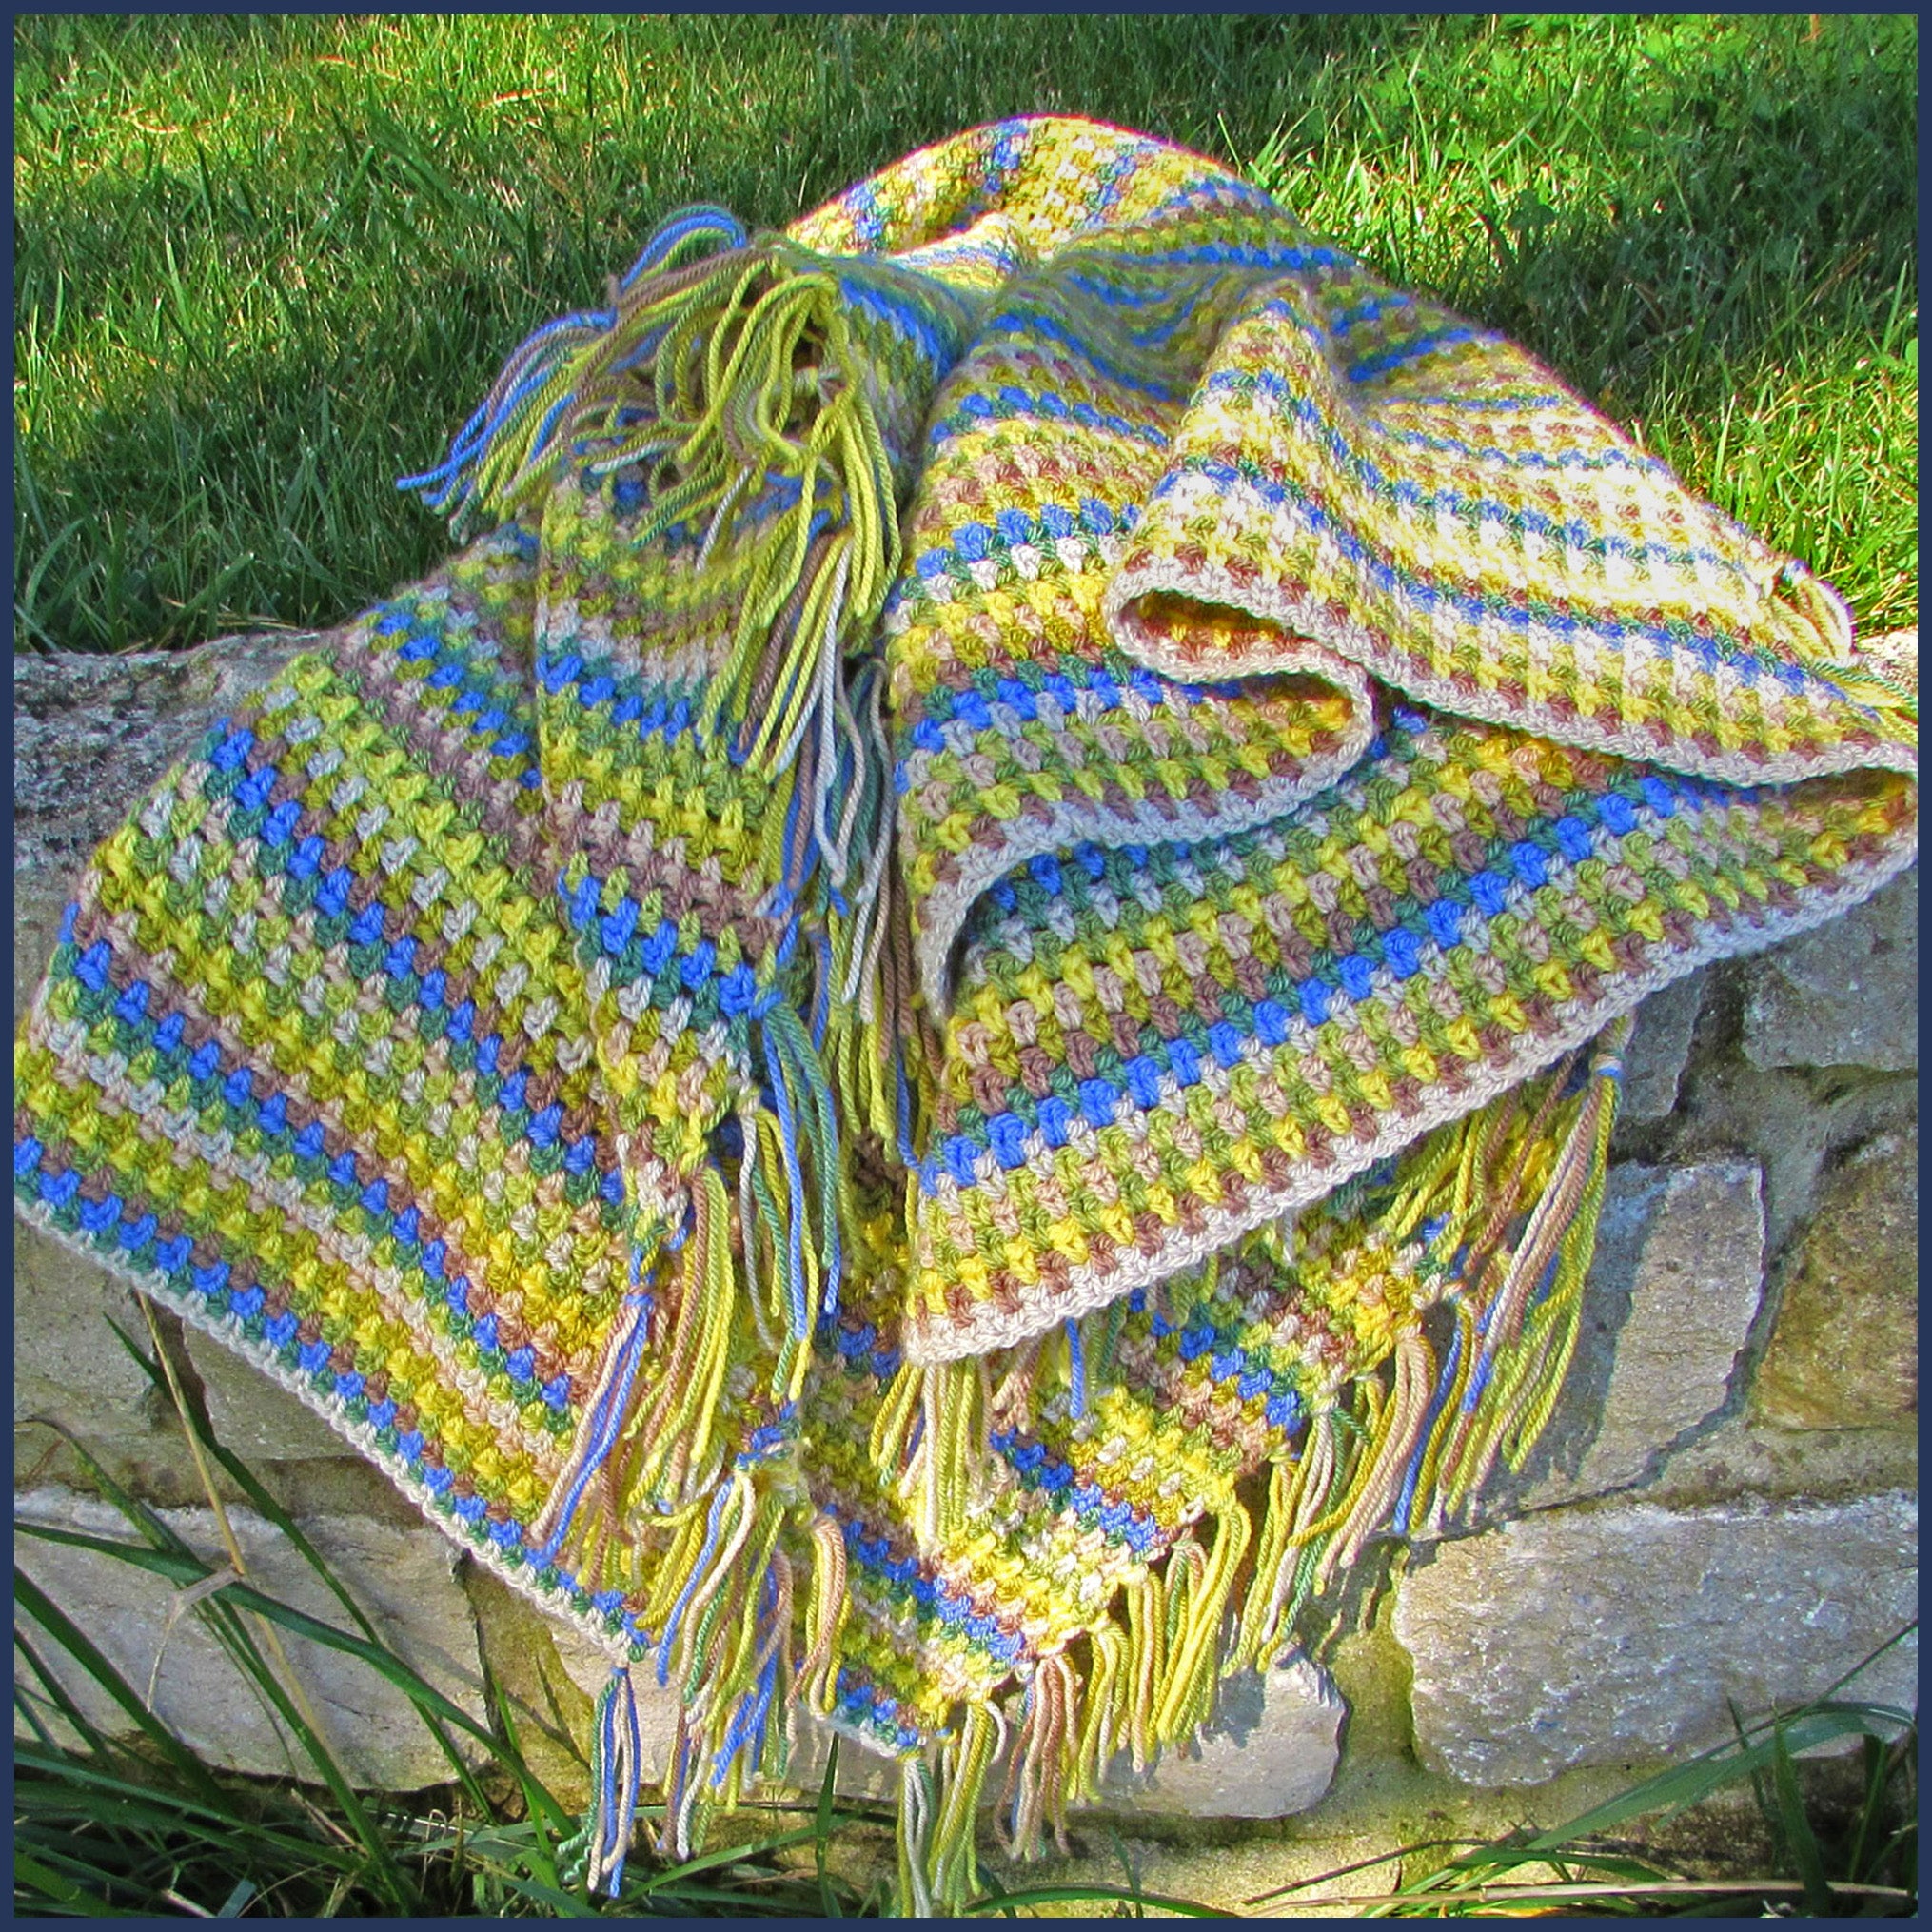 Spring Woodland Crochet Blanket Kit - the perfect beginner crochet